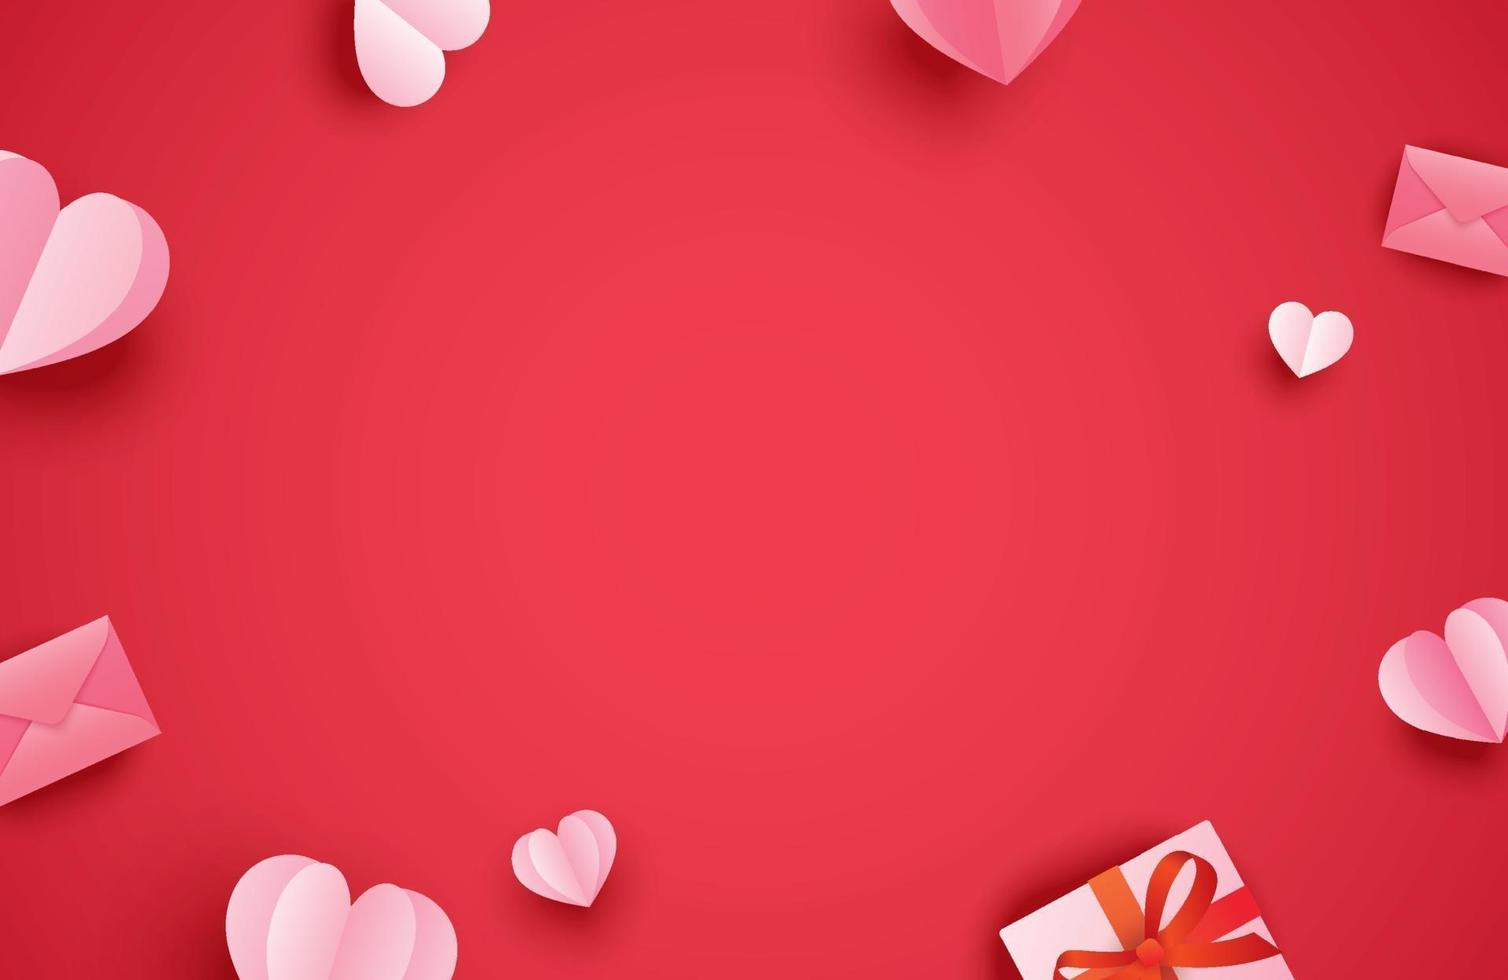 Glad Alla hjärtans dag gratulationskort med papper hjärtan på röd pastell bakgrund. vektor